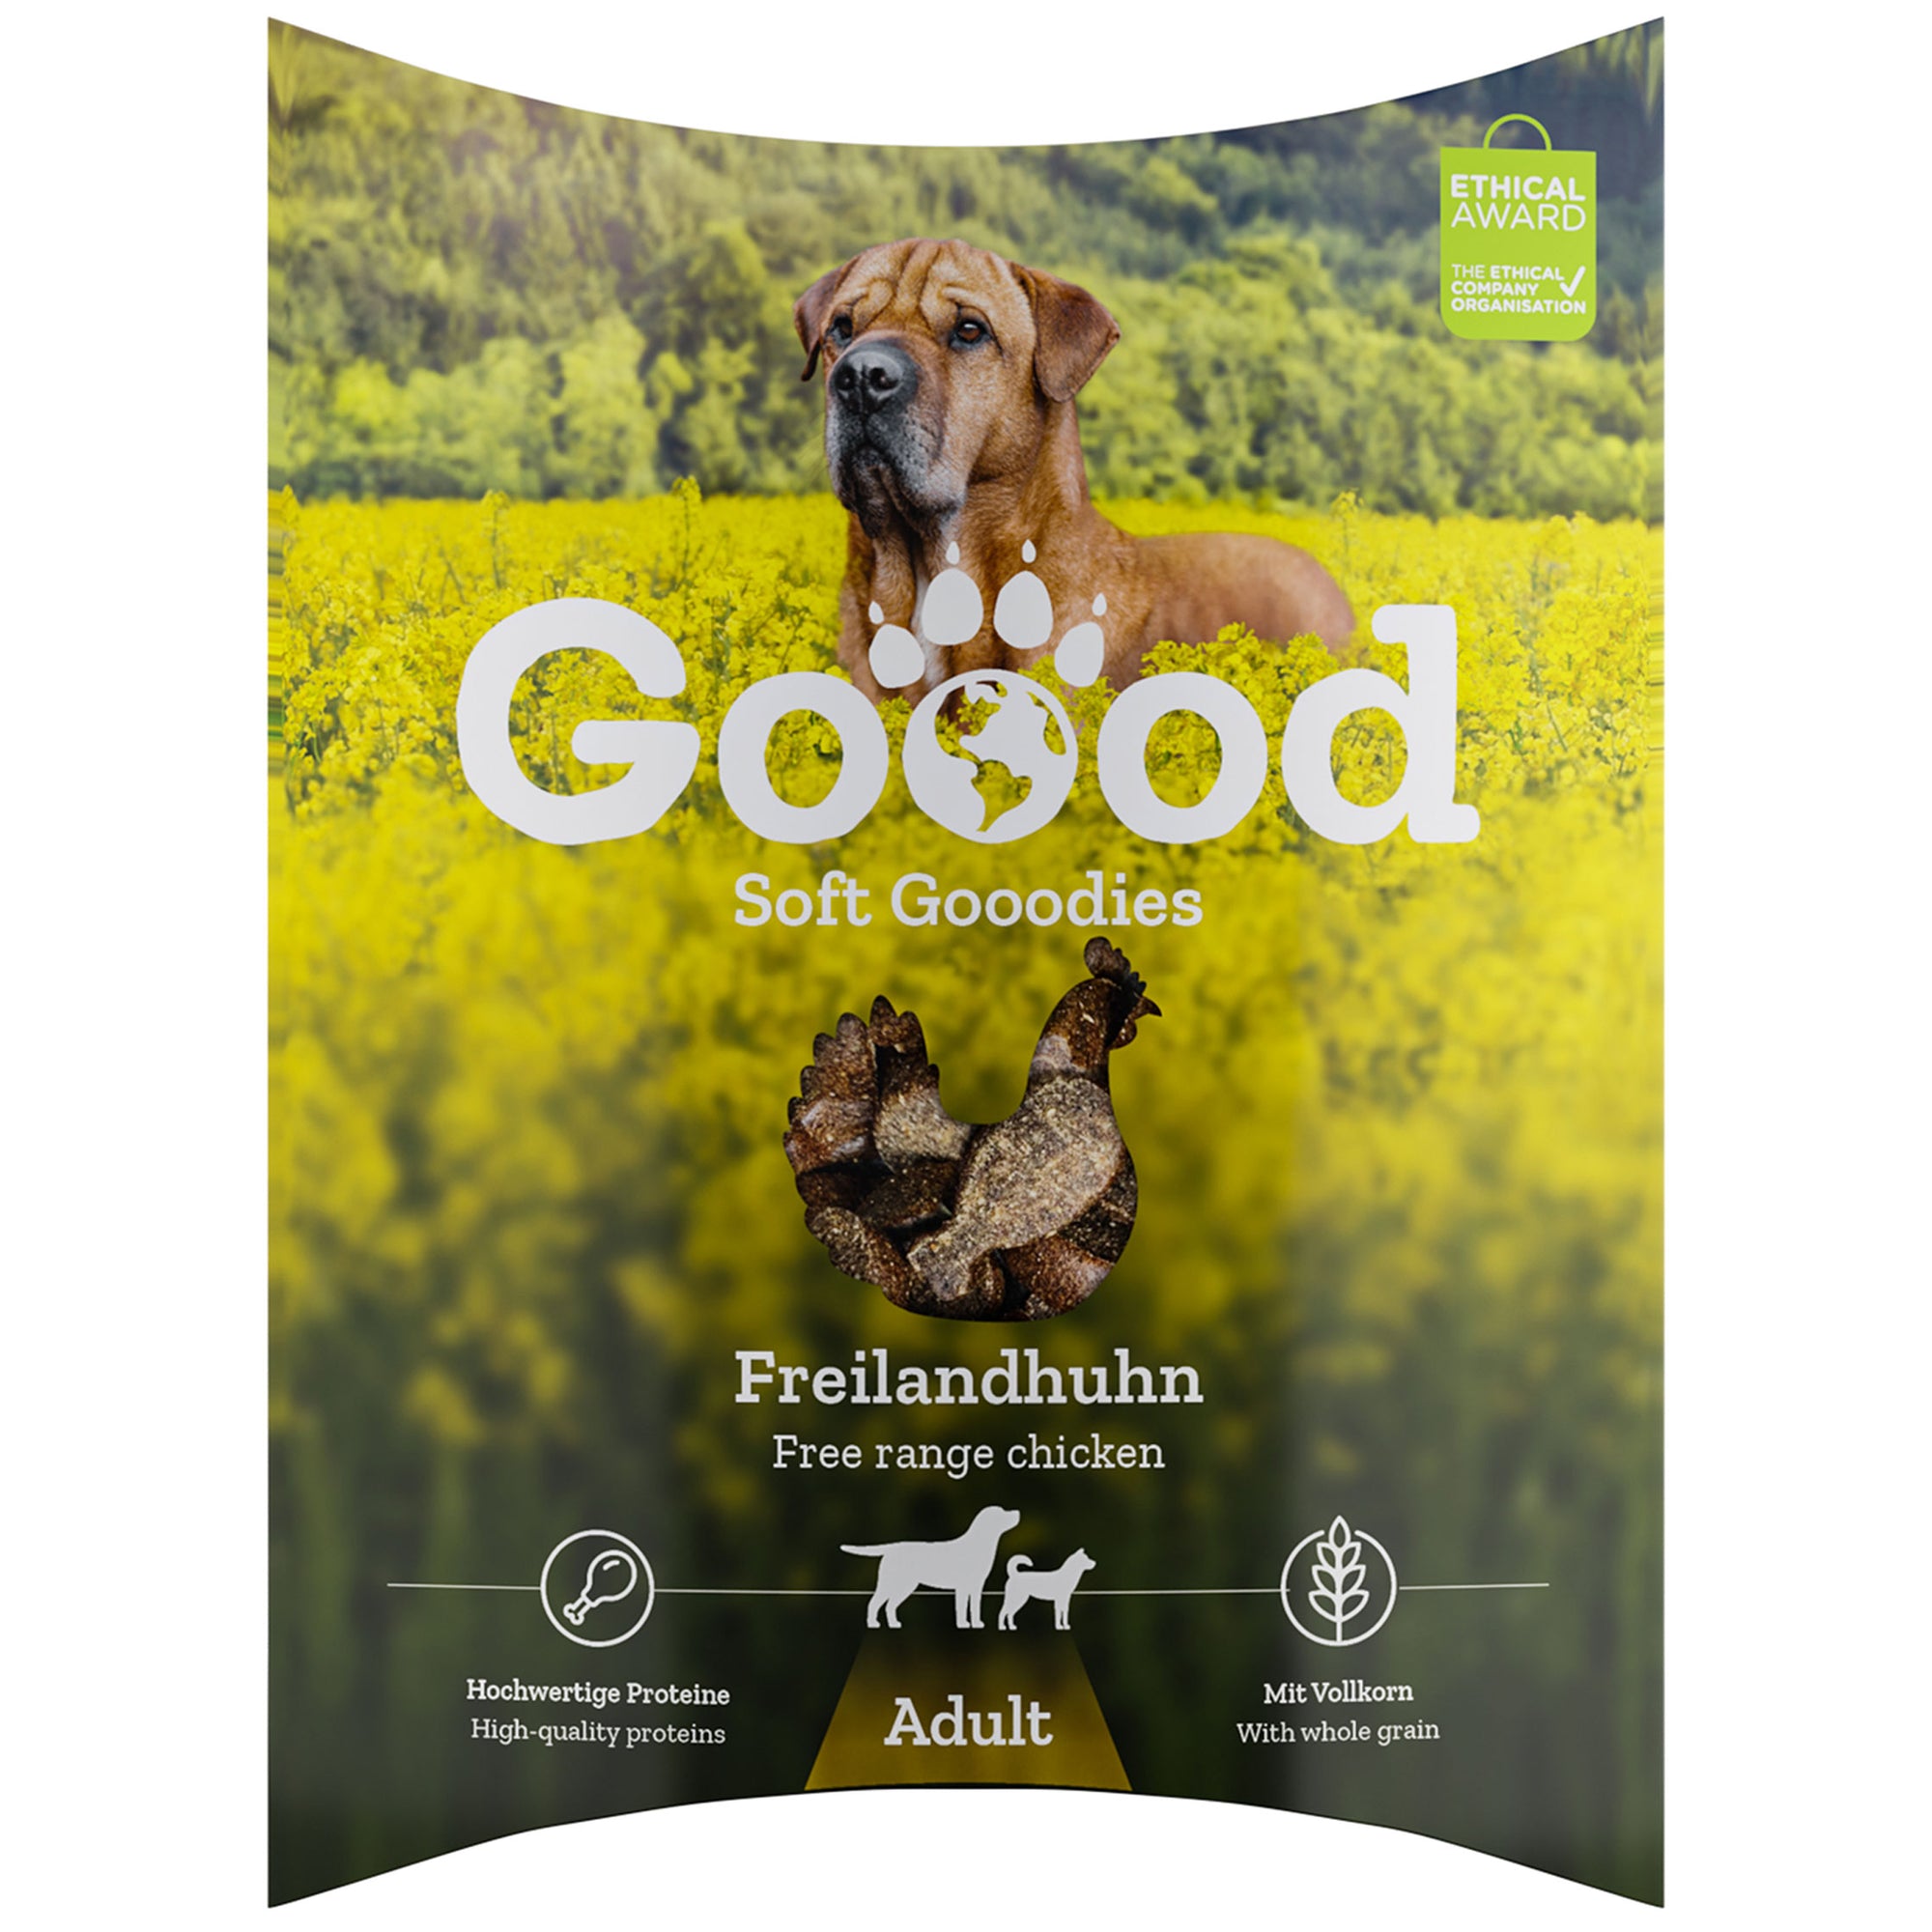 Artikel mit dem Namen GOOOD Soft Gooodies Adult Freilandhuhn im Shop von zoo.de , dem Onlineshop für nachhaltiges Hundefutter und Katzenfutter.